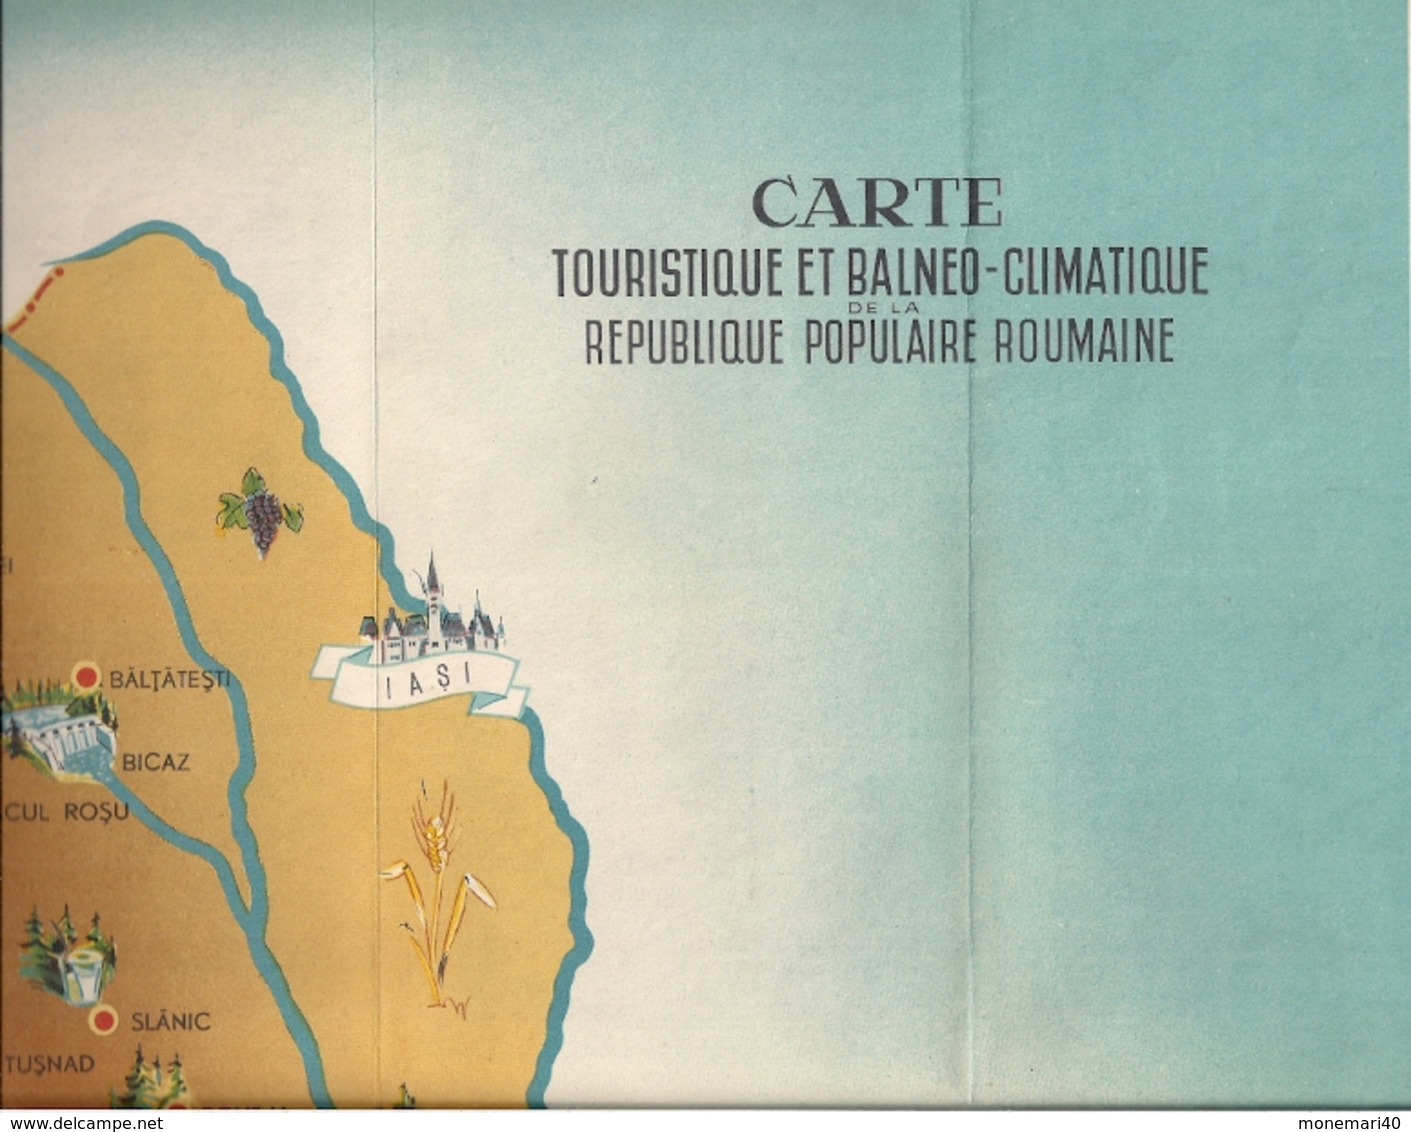 ROUMANIE (RÉPUBLIQUE POPULAIRE) - DÉPLIANT TOURISTIQUE avec CARTE BALNEO-CLIMATIQUE.